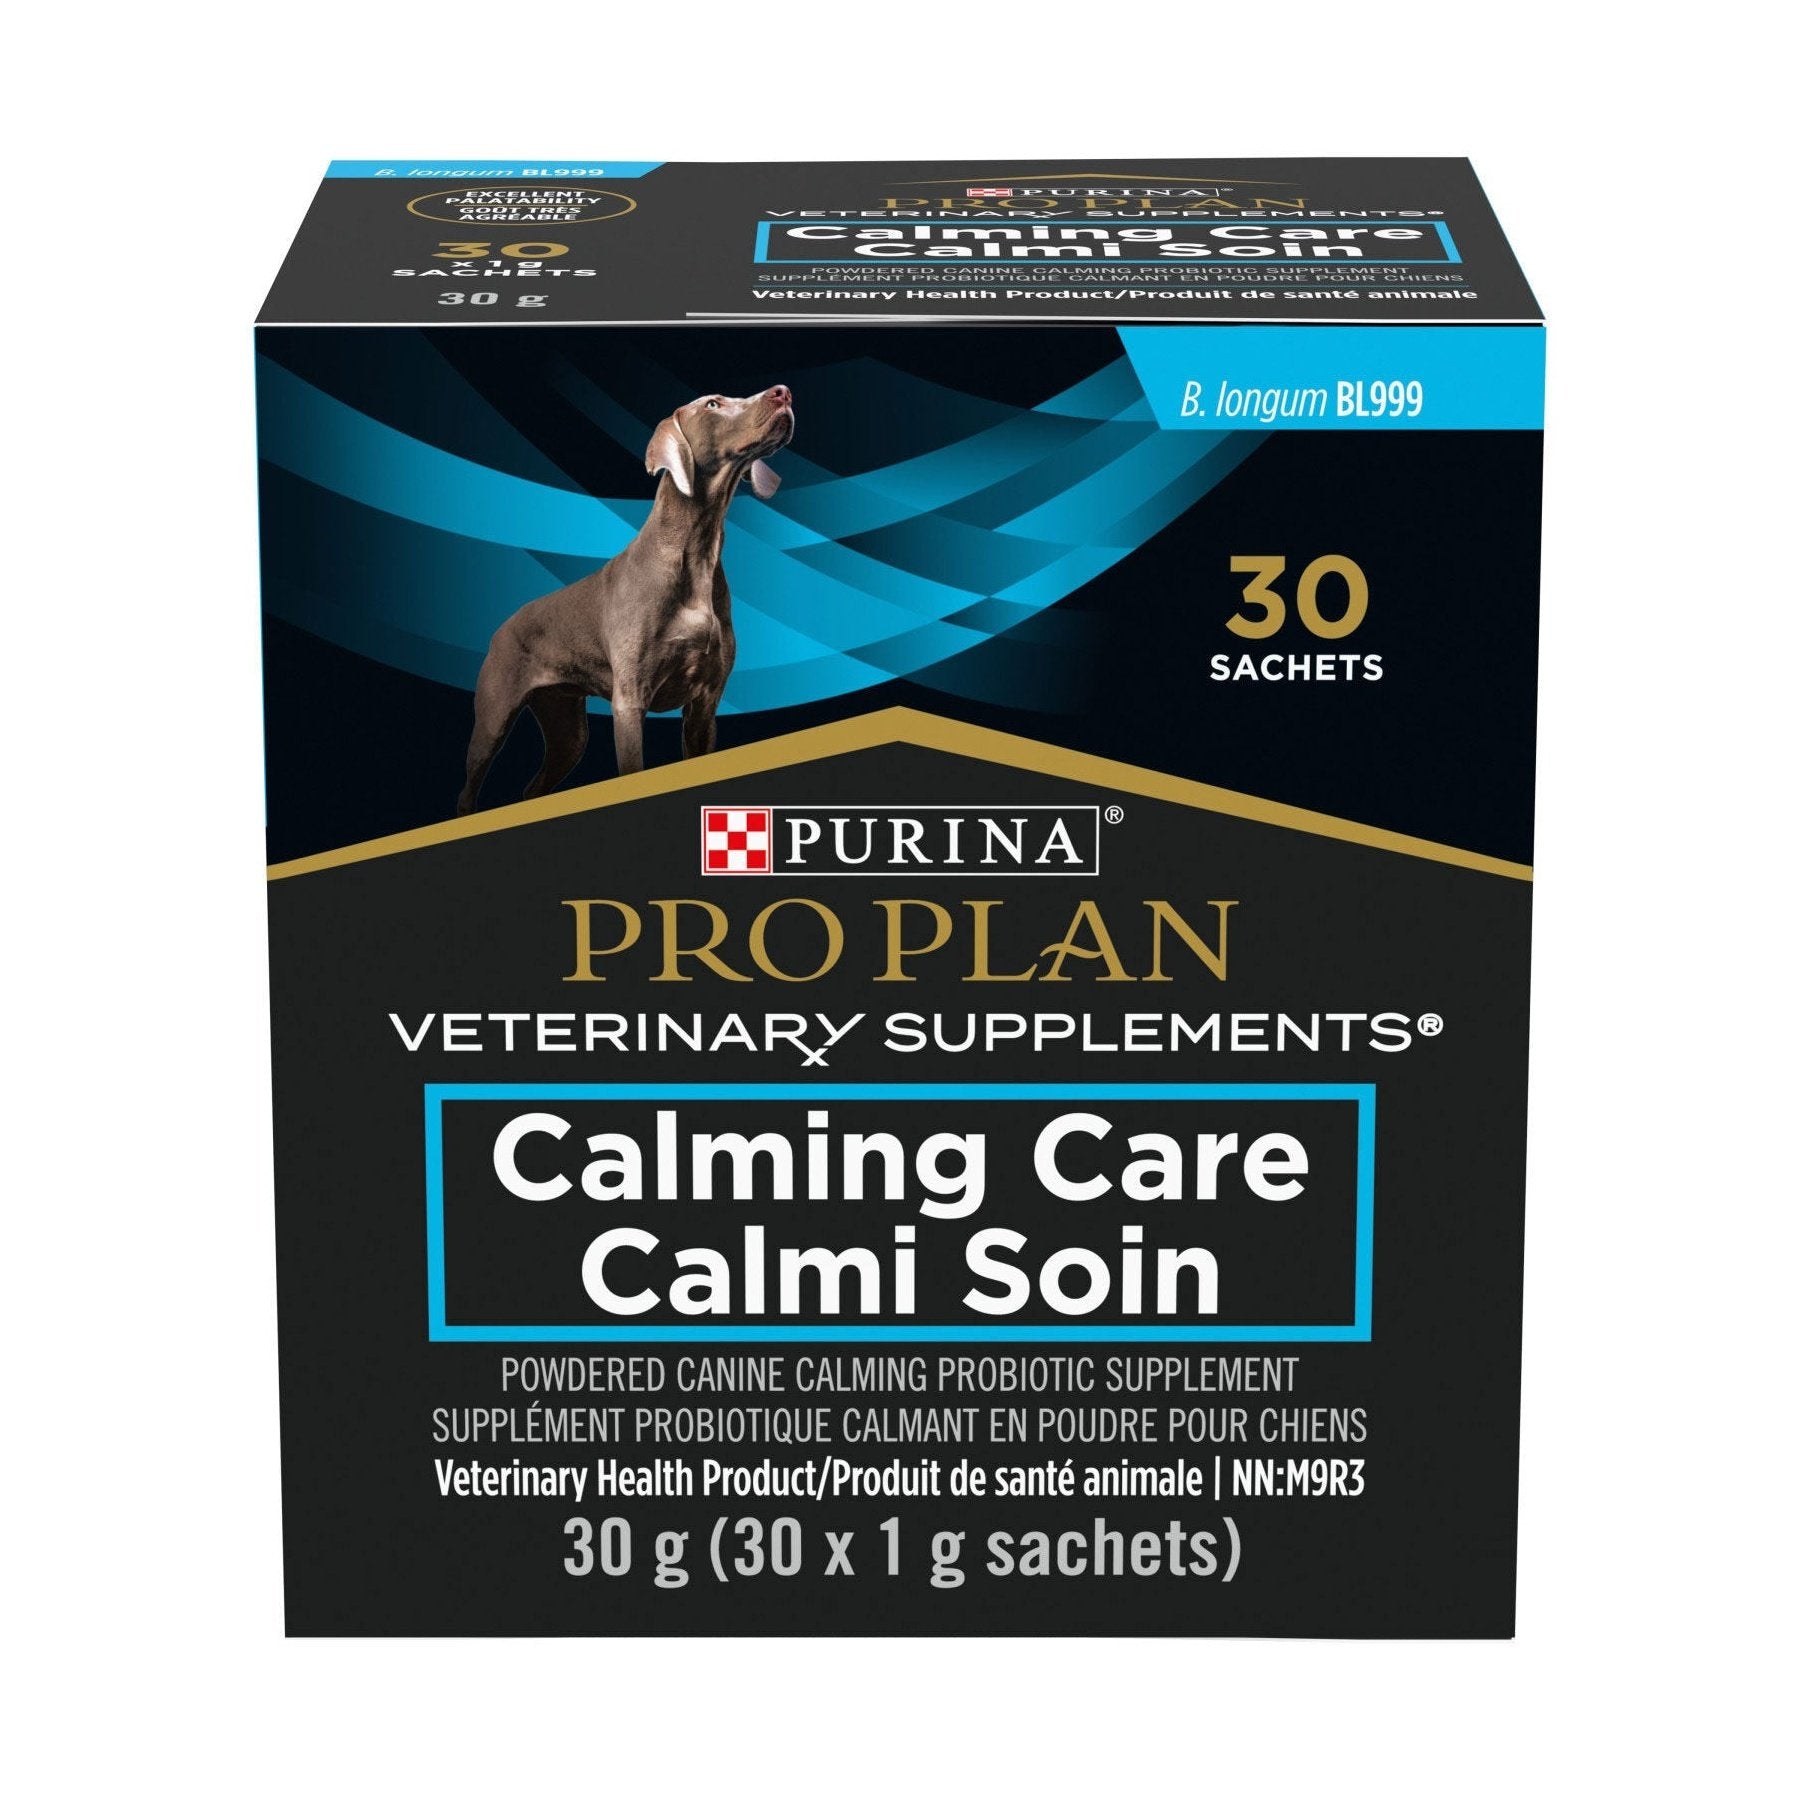 Supplément probiotique calmant en poudre pour chiens, Calmi Soin - Purina Pro Plan